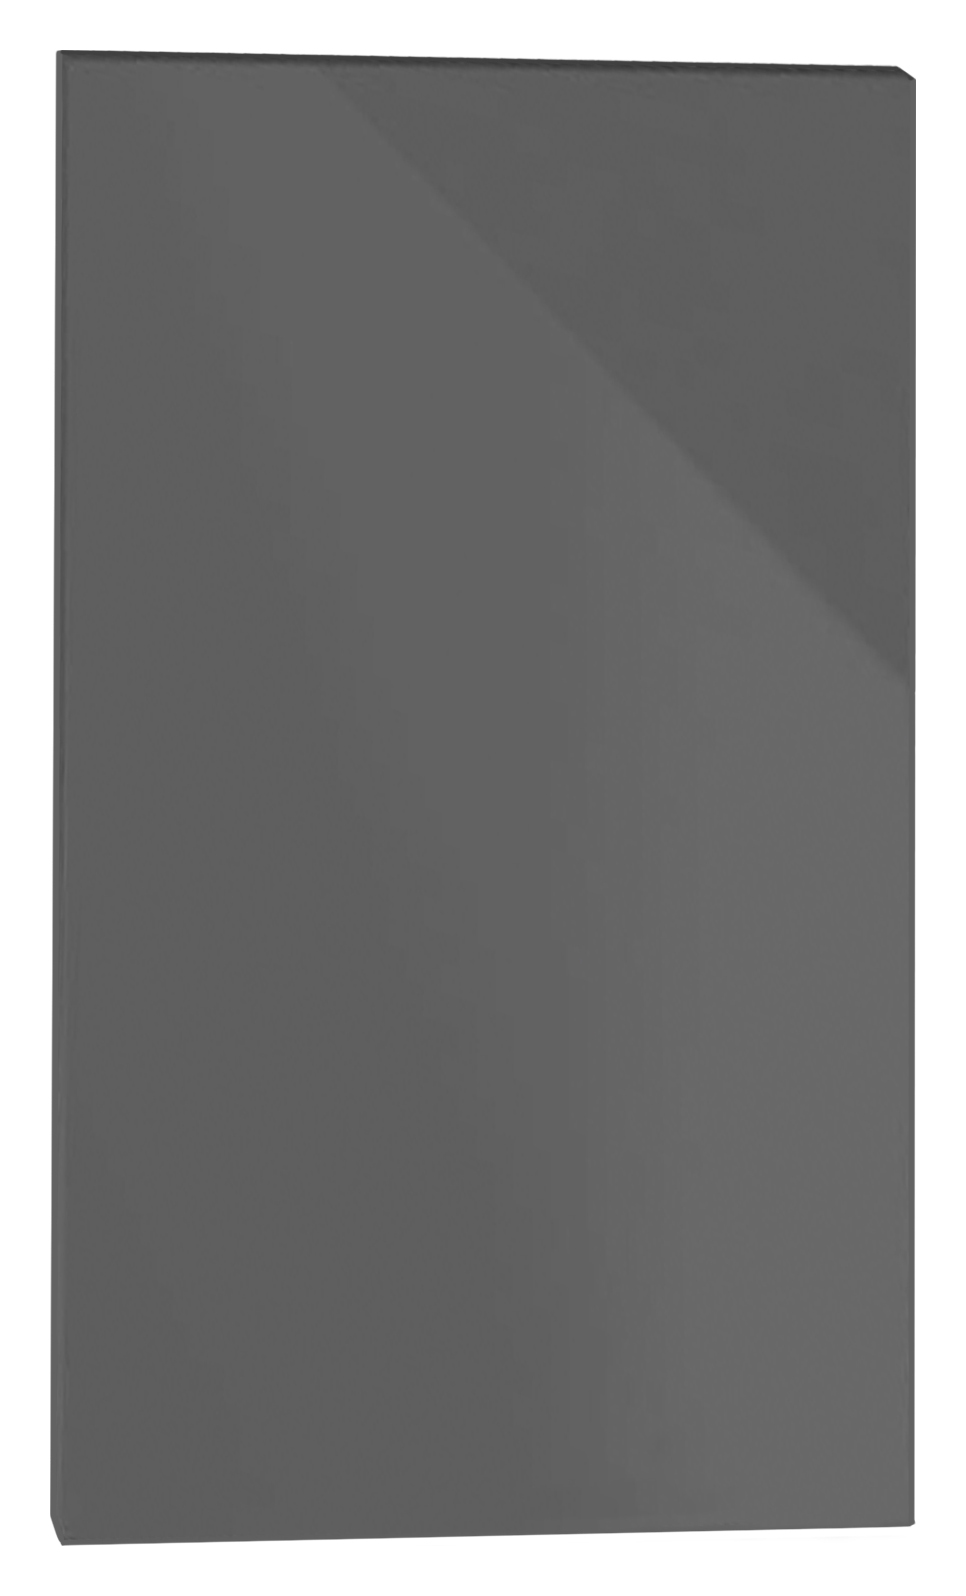 Orlando Dark Grey Gloss Slab Appliance Fascia - 450 x 731mm